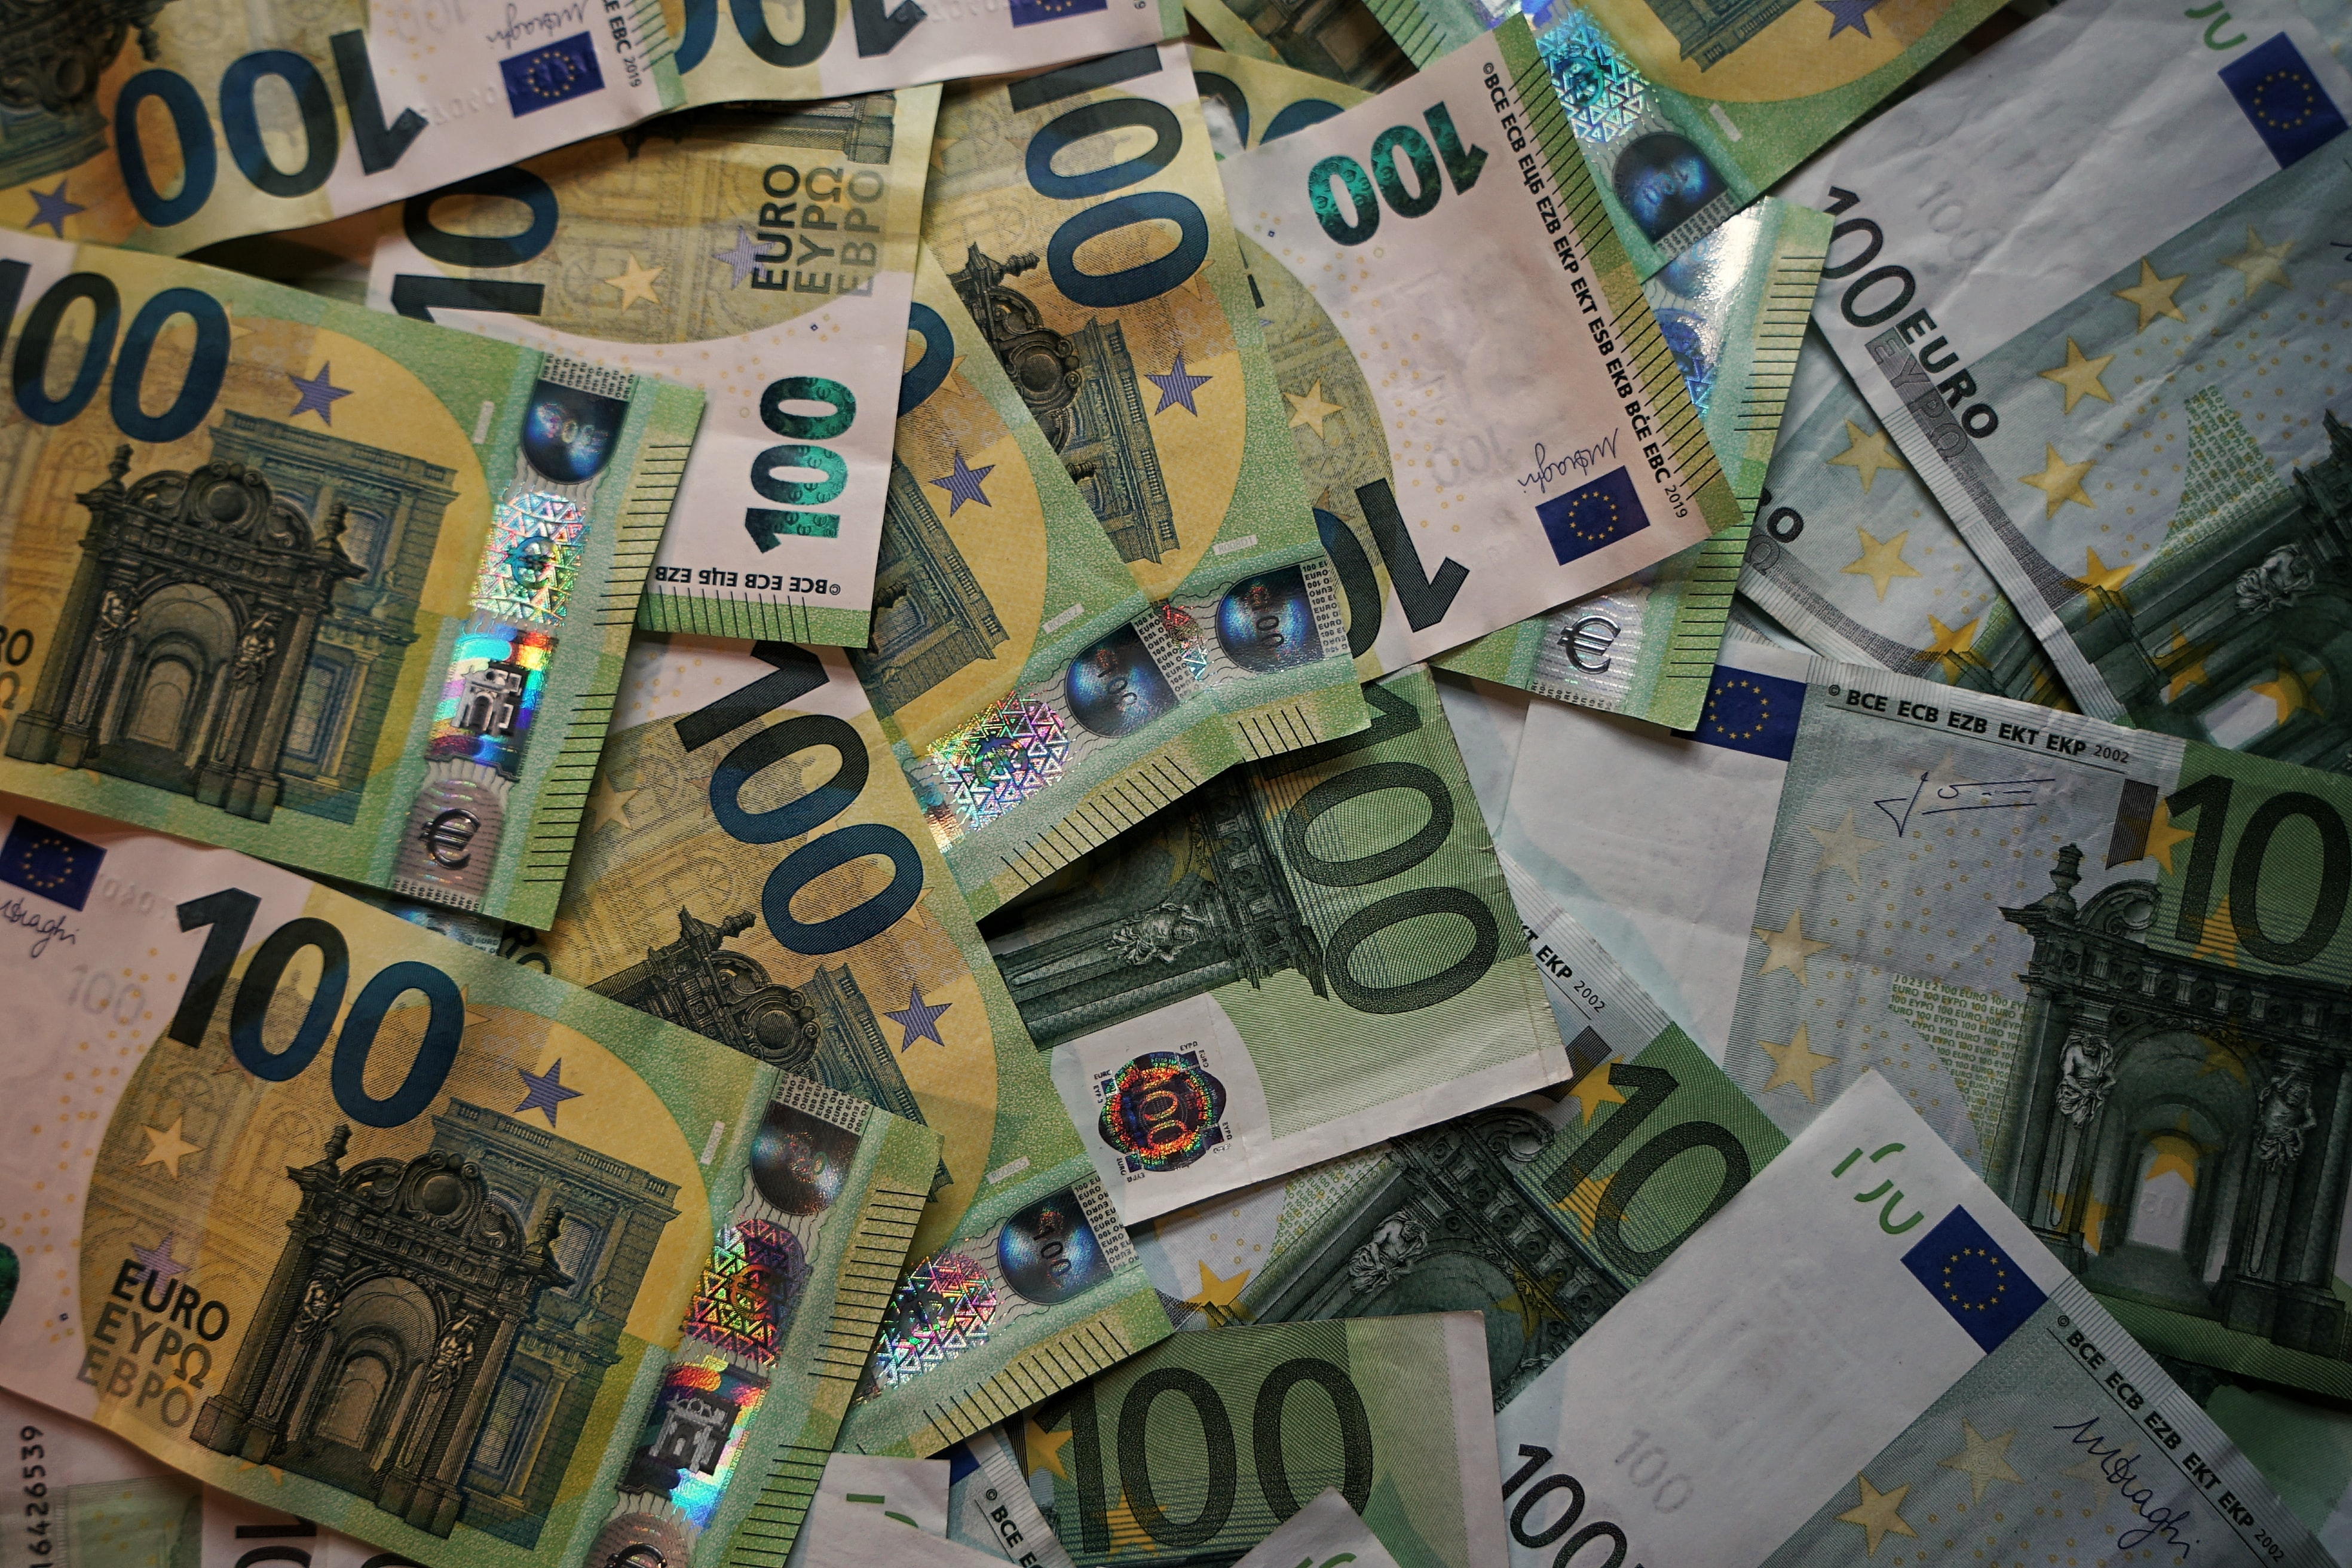 Dutch Regulator Raises Fines on Online Gambling Deals